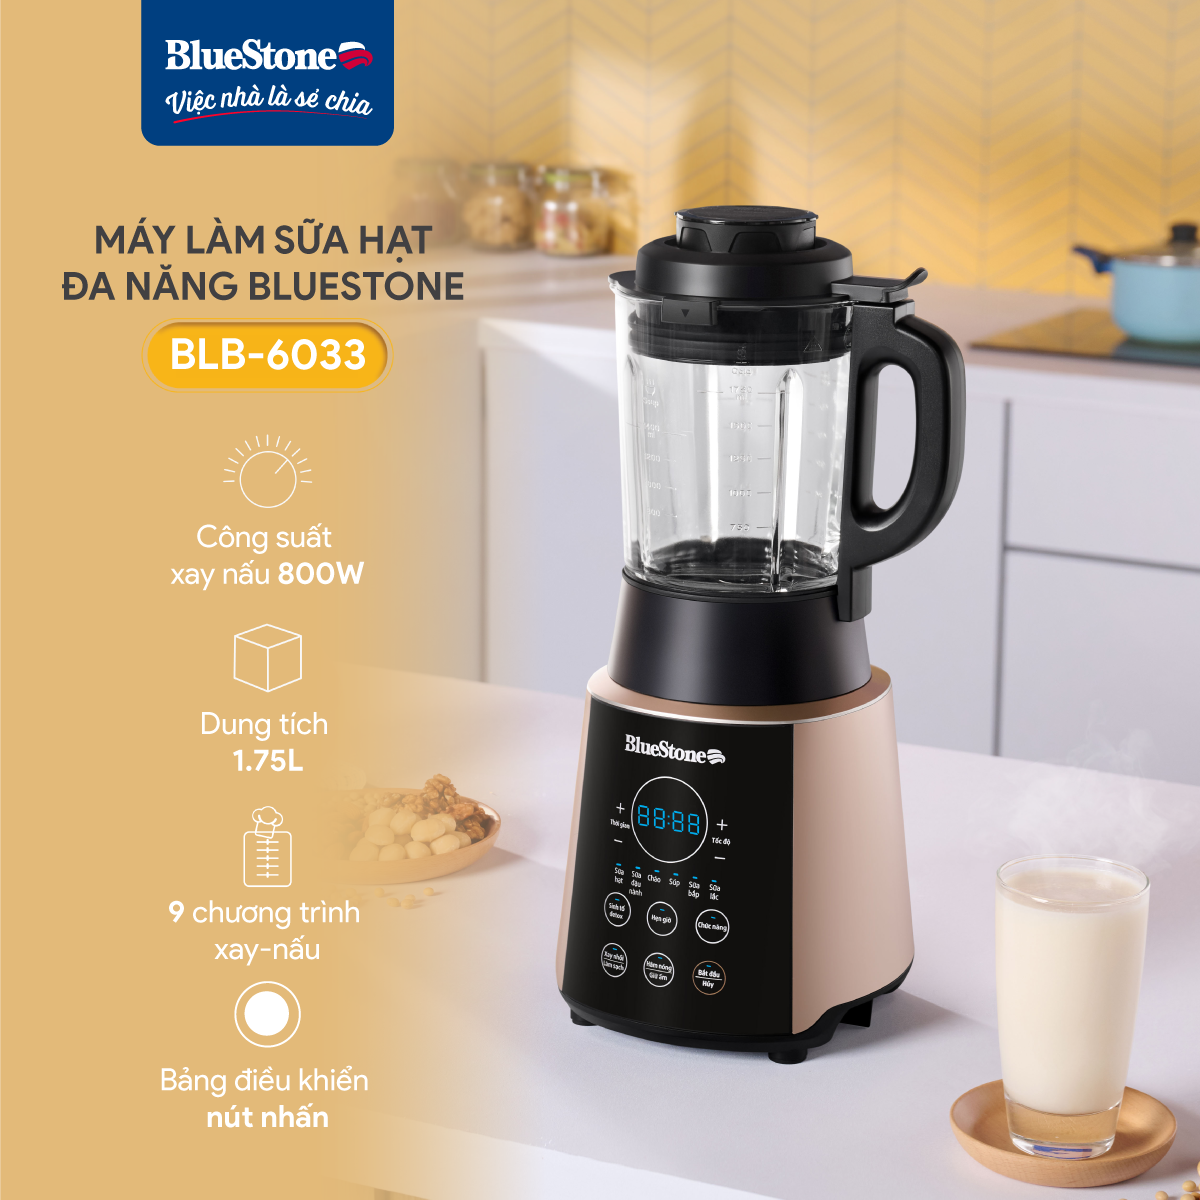 Máy Xay Nấu Sữa Hạt Đa Năng BlueStone BLB-6033 - Công suất 800W - 9 chương trình nấu - Bảo hành 24 tháng - Hàng chính hãng